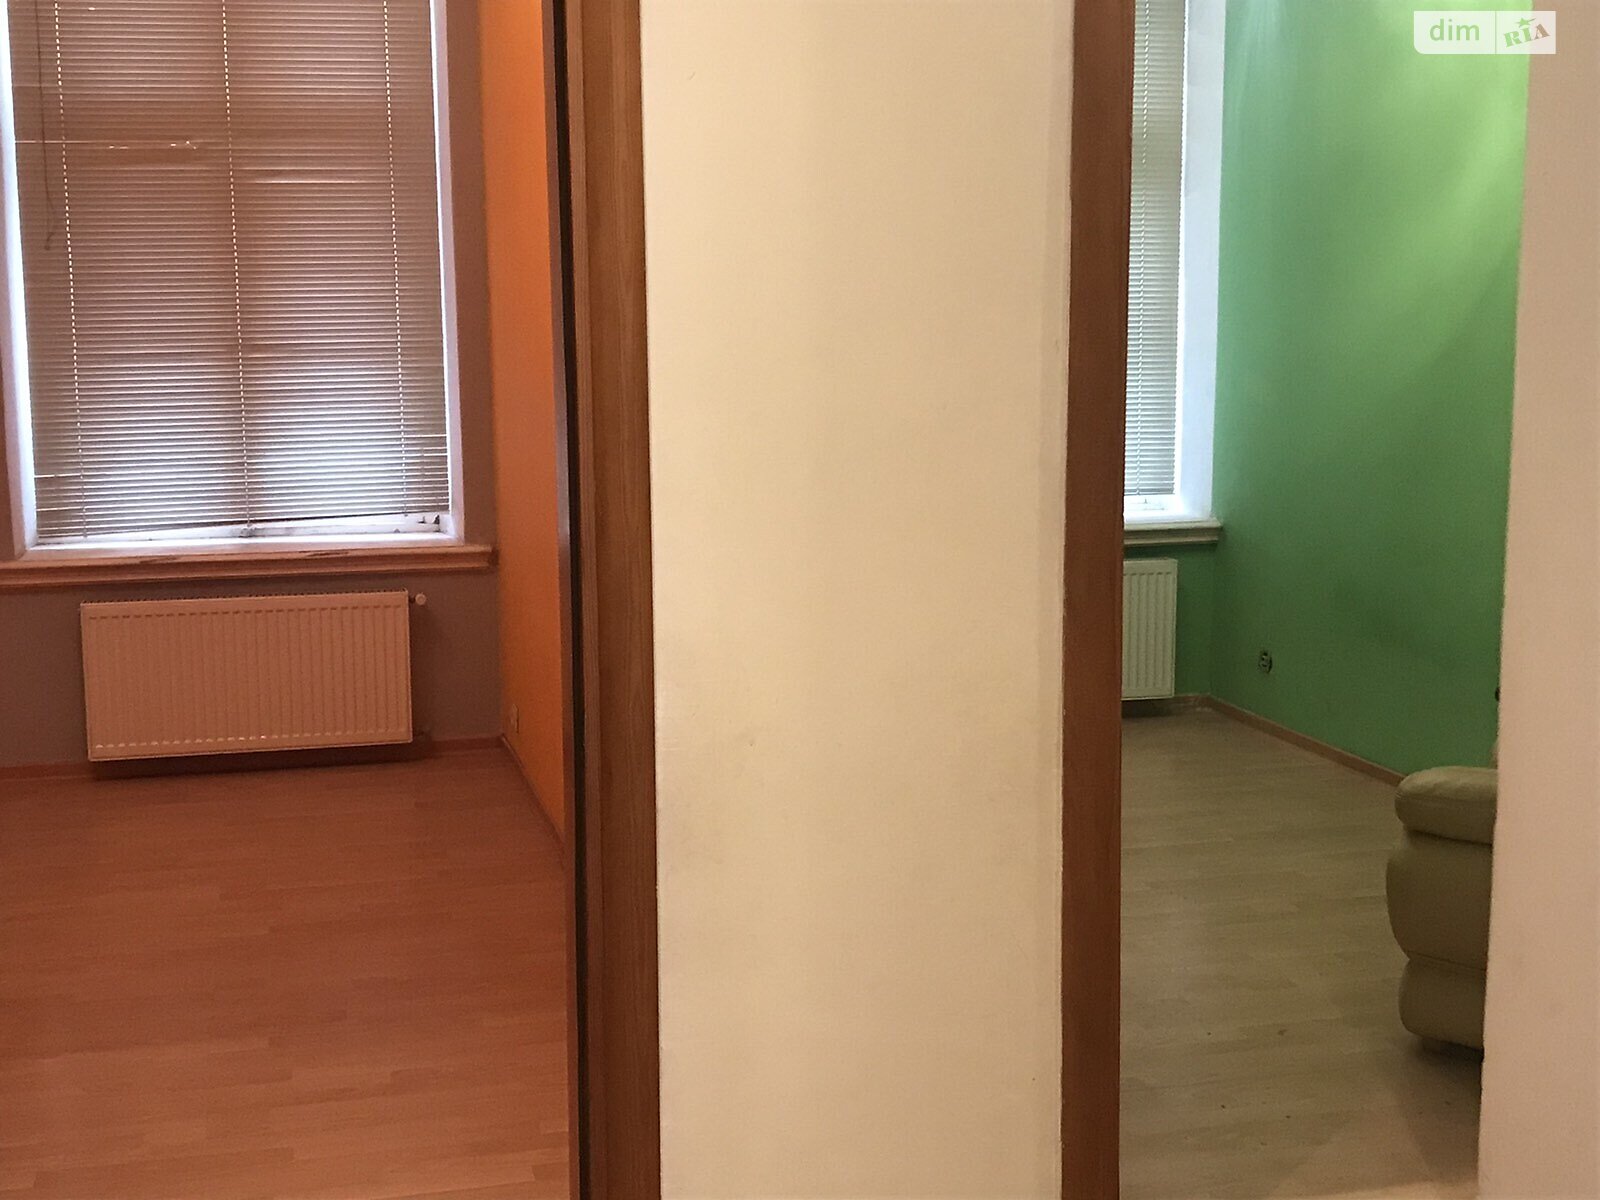 Аренда офисного помещения в Николаеве, Гражданская (Цен. р-н) улица 16, помещений - 8, этаж - 1 фото 1